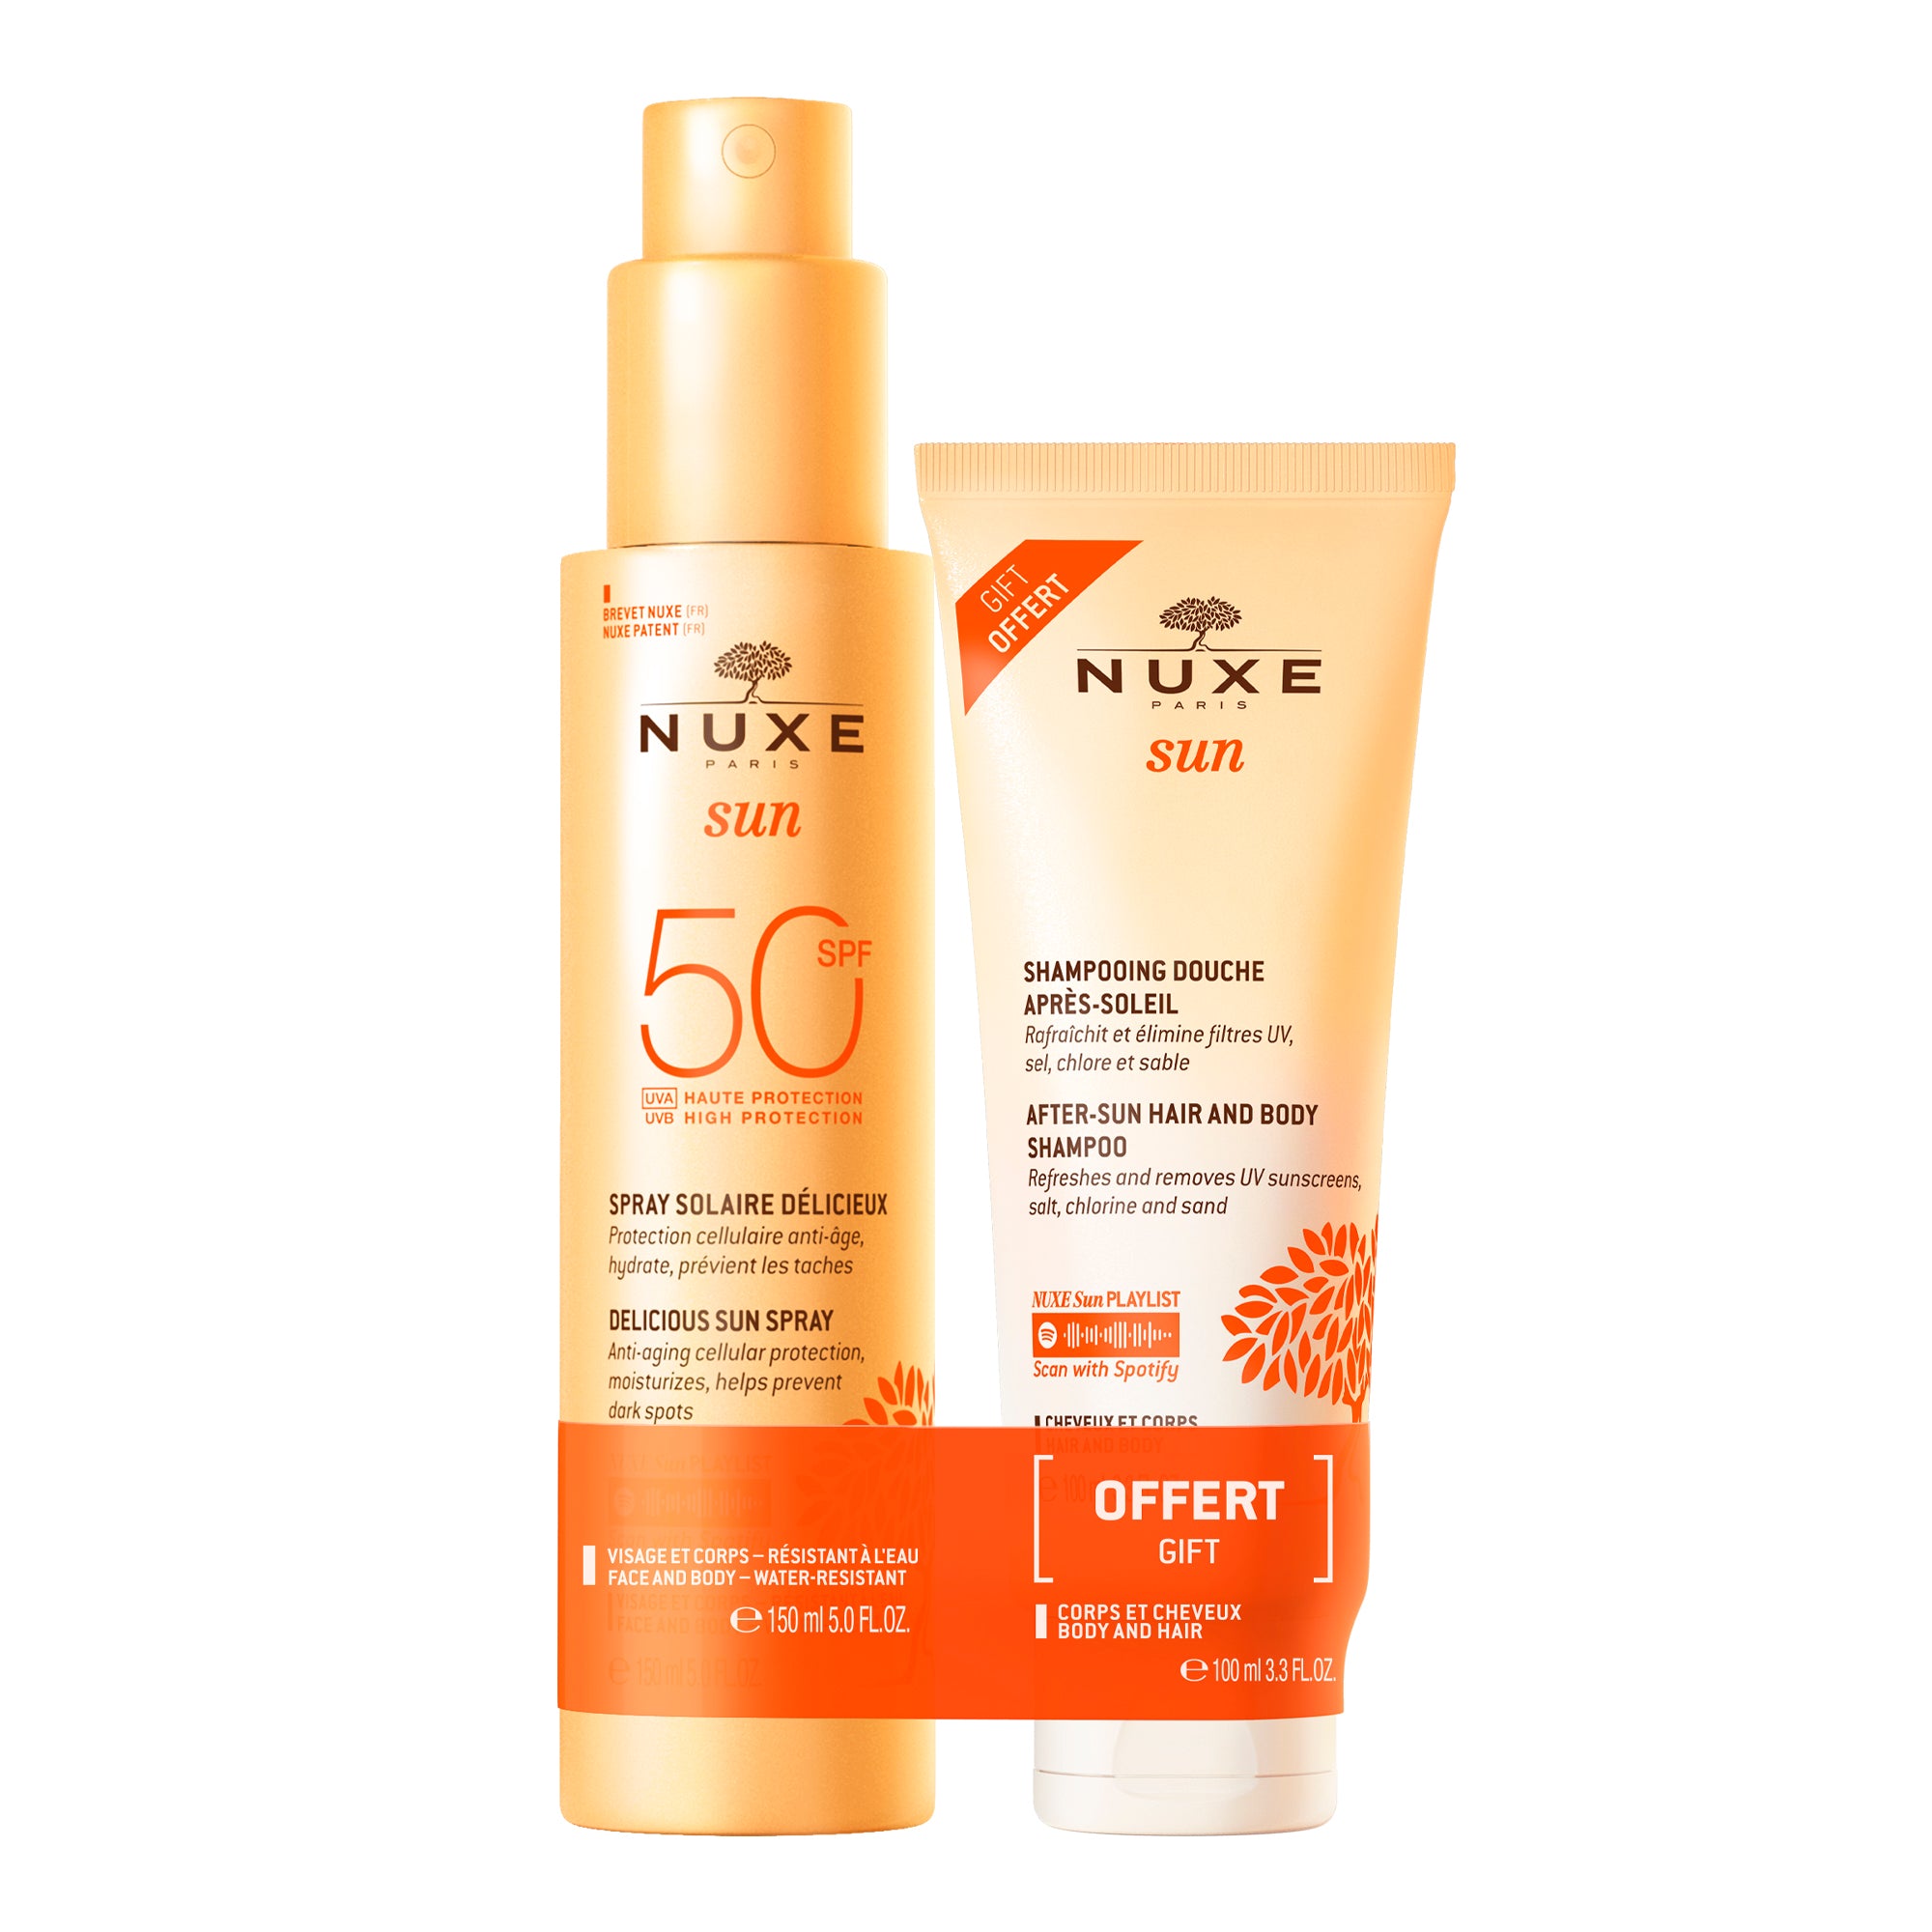 Dúo Delicioso Spray Solar Alta Protección SPF50 rostro y cuerpo y Champú de Ducha After Sun 100ml gratis